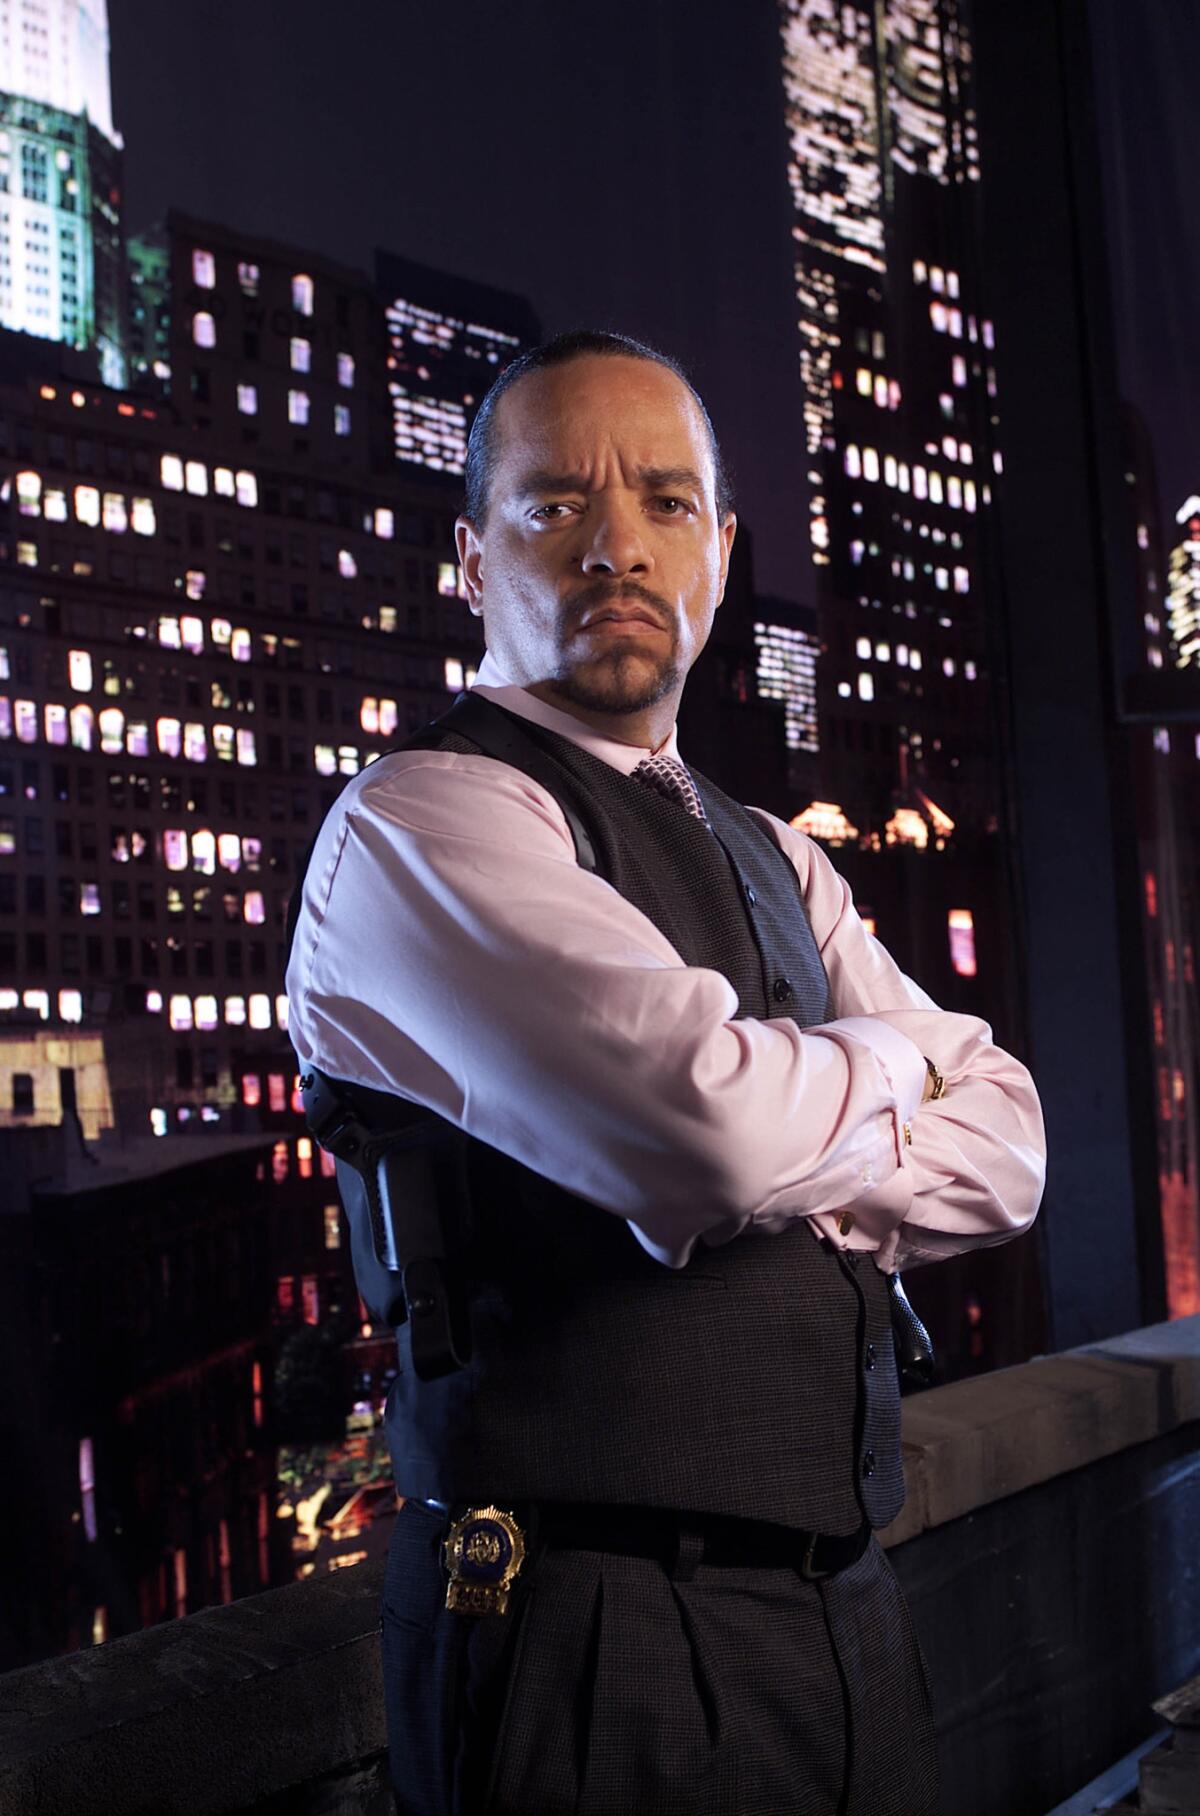 IceT as Odafin "Fin" Tutuola in the long-running NBC series "Law & Order: Special Victims Unit."